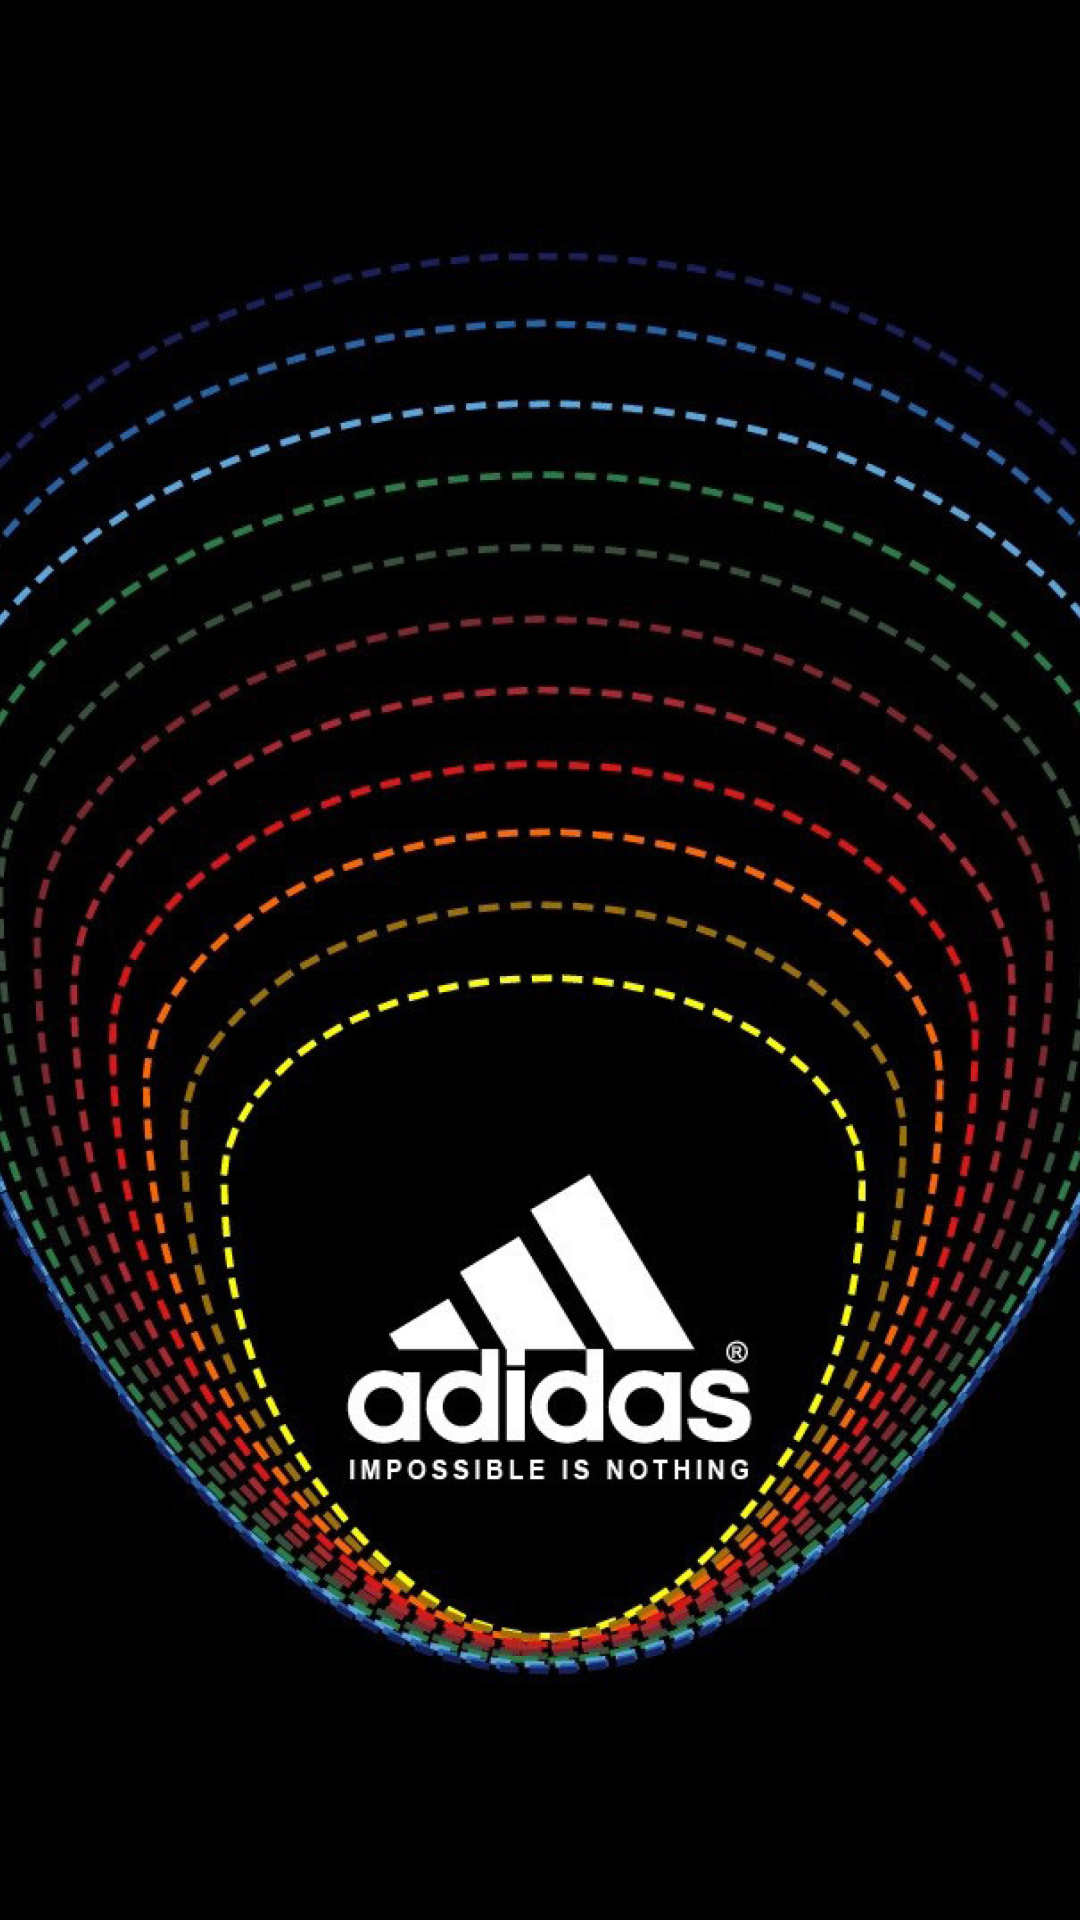 adidas 4k wallpaper